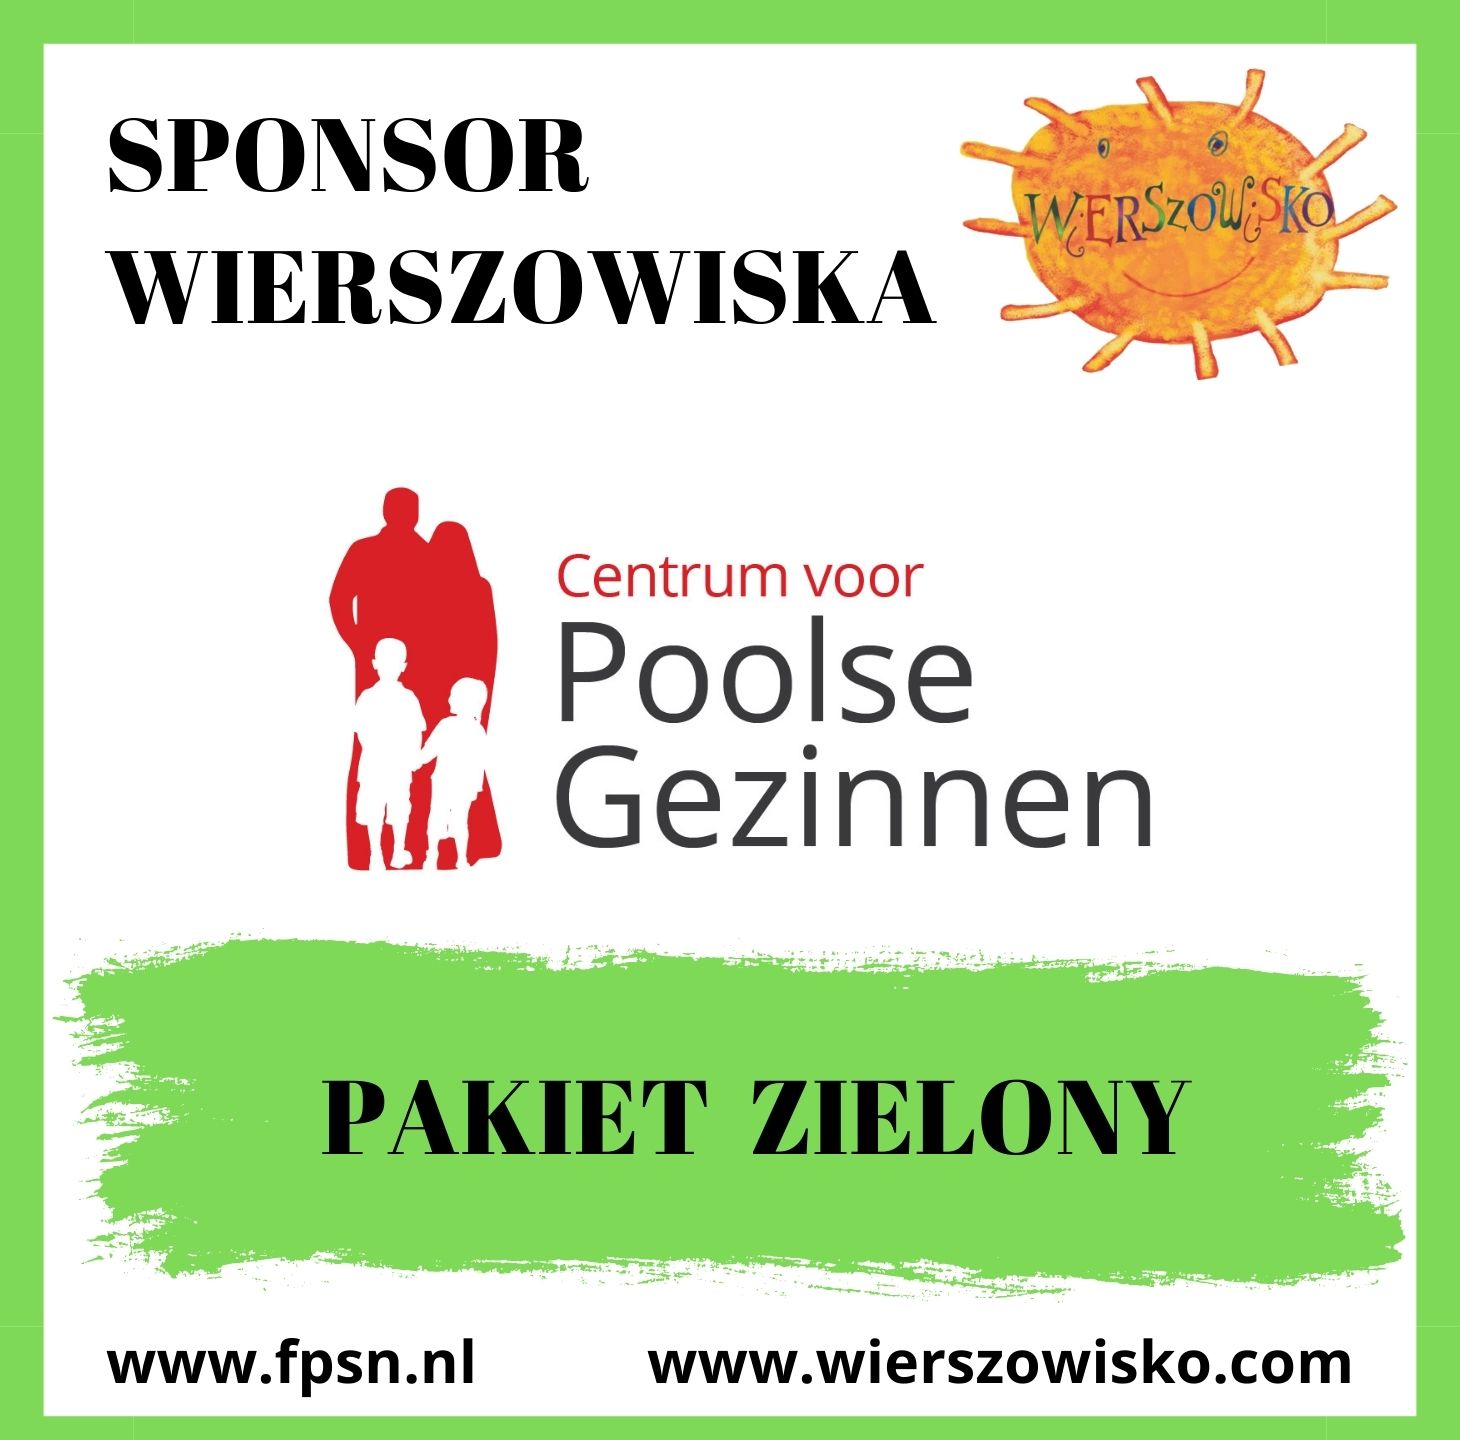 Poolse gezinnen - sponsor